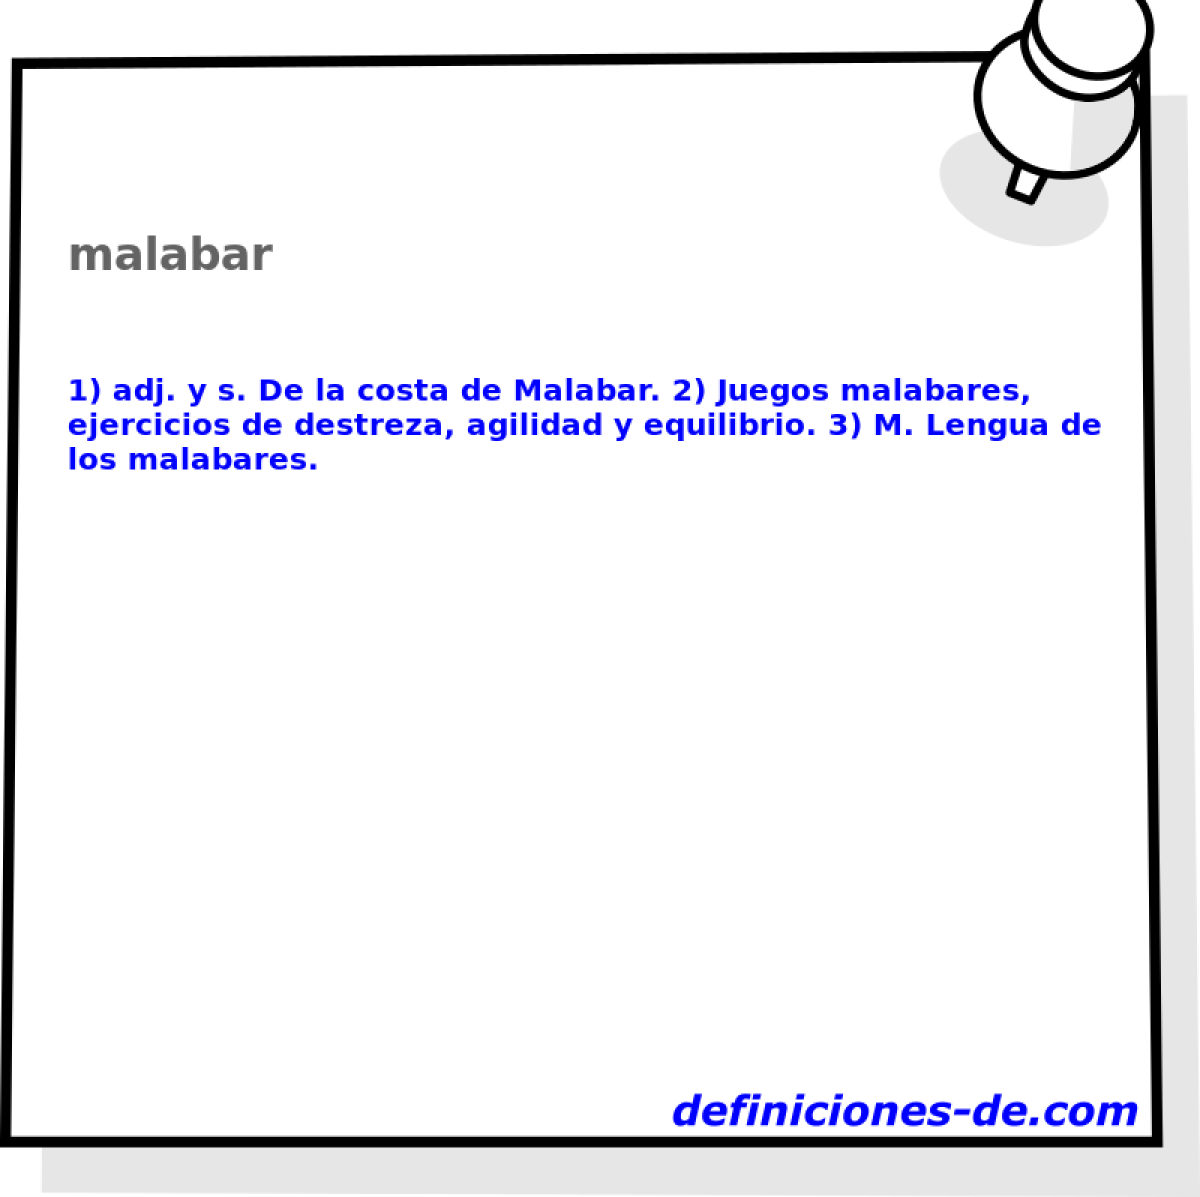 malabar 